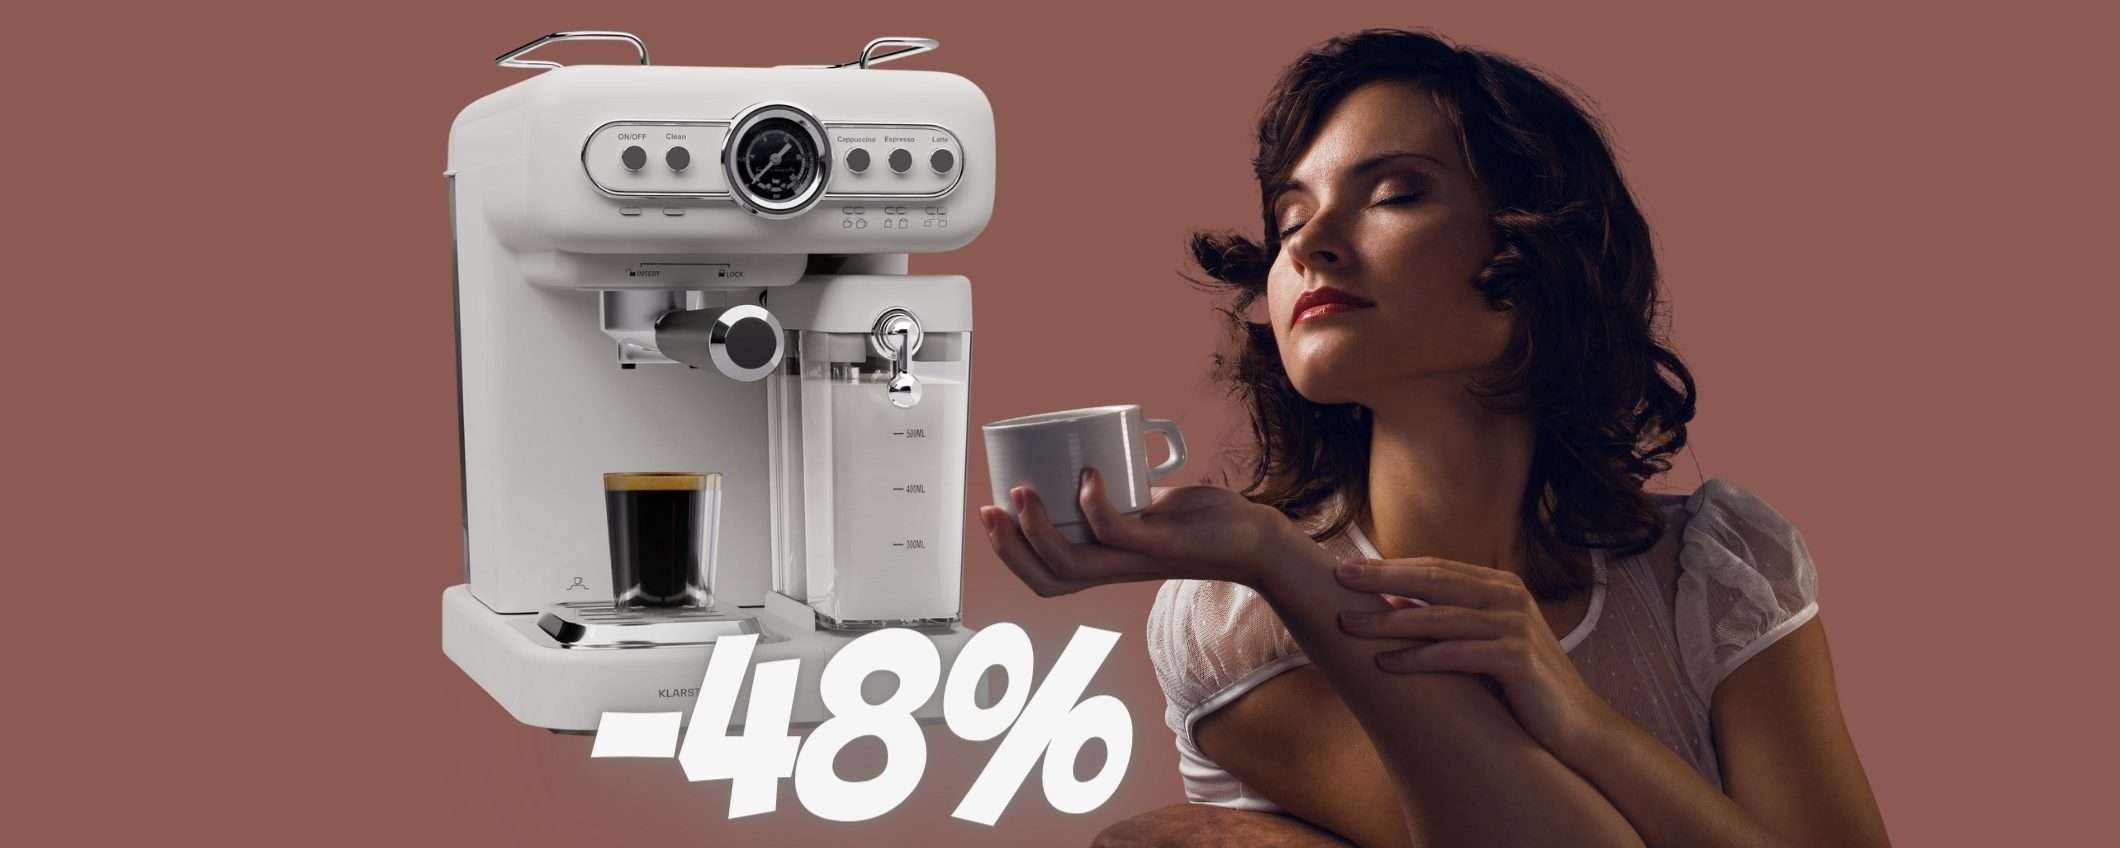 SCONTO del 48% per questa splendida macchina per caffè espresso